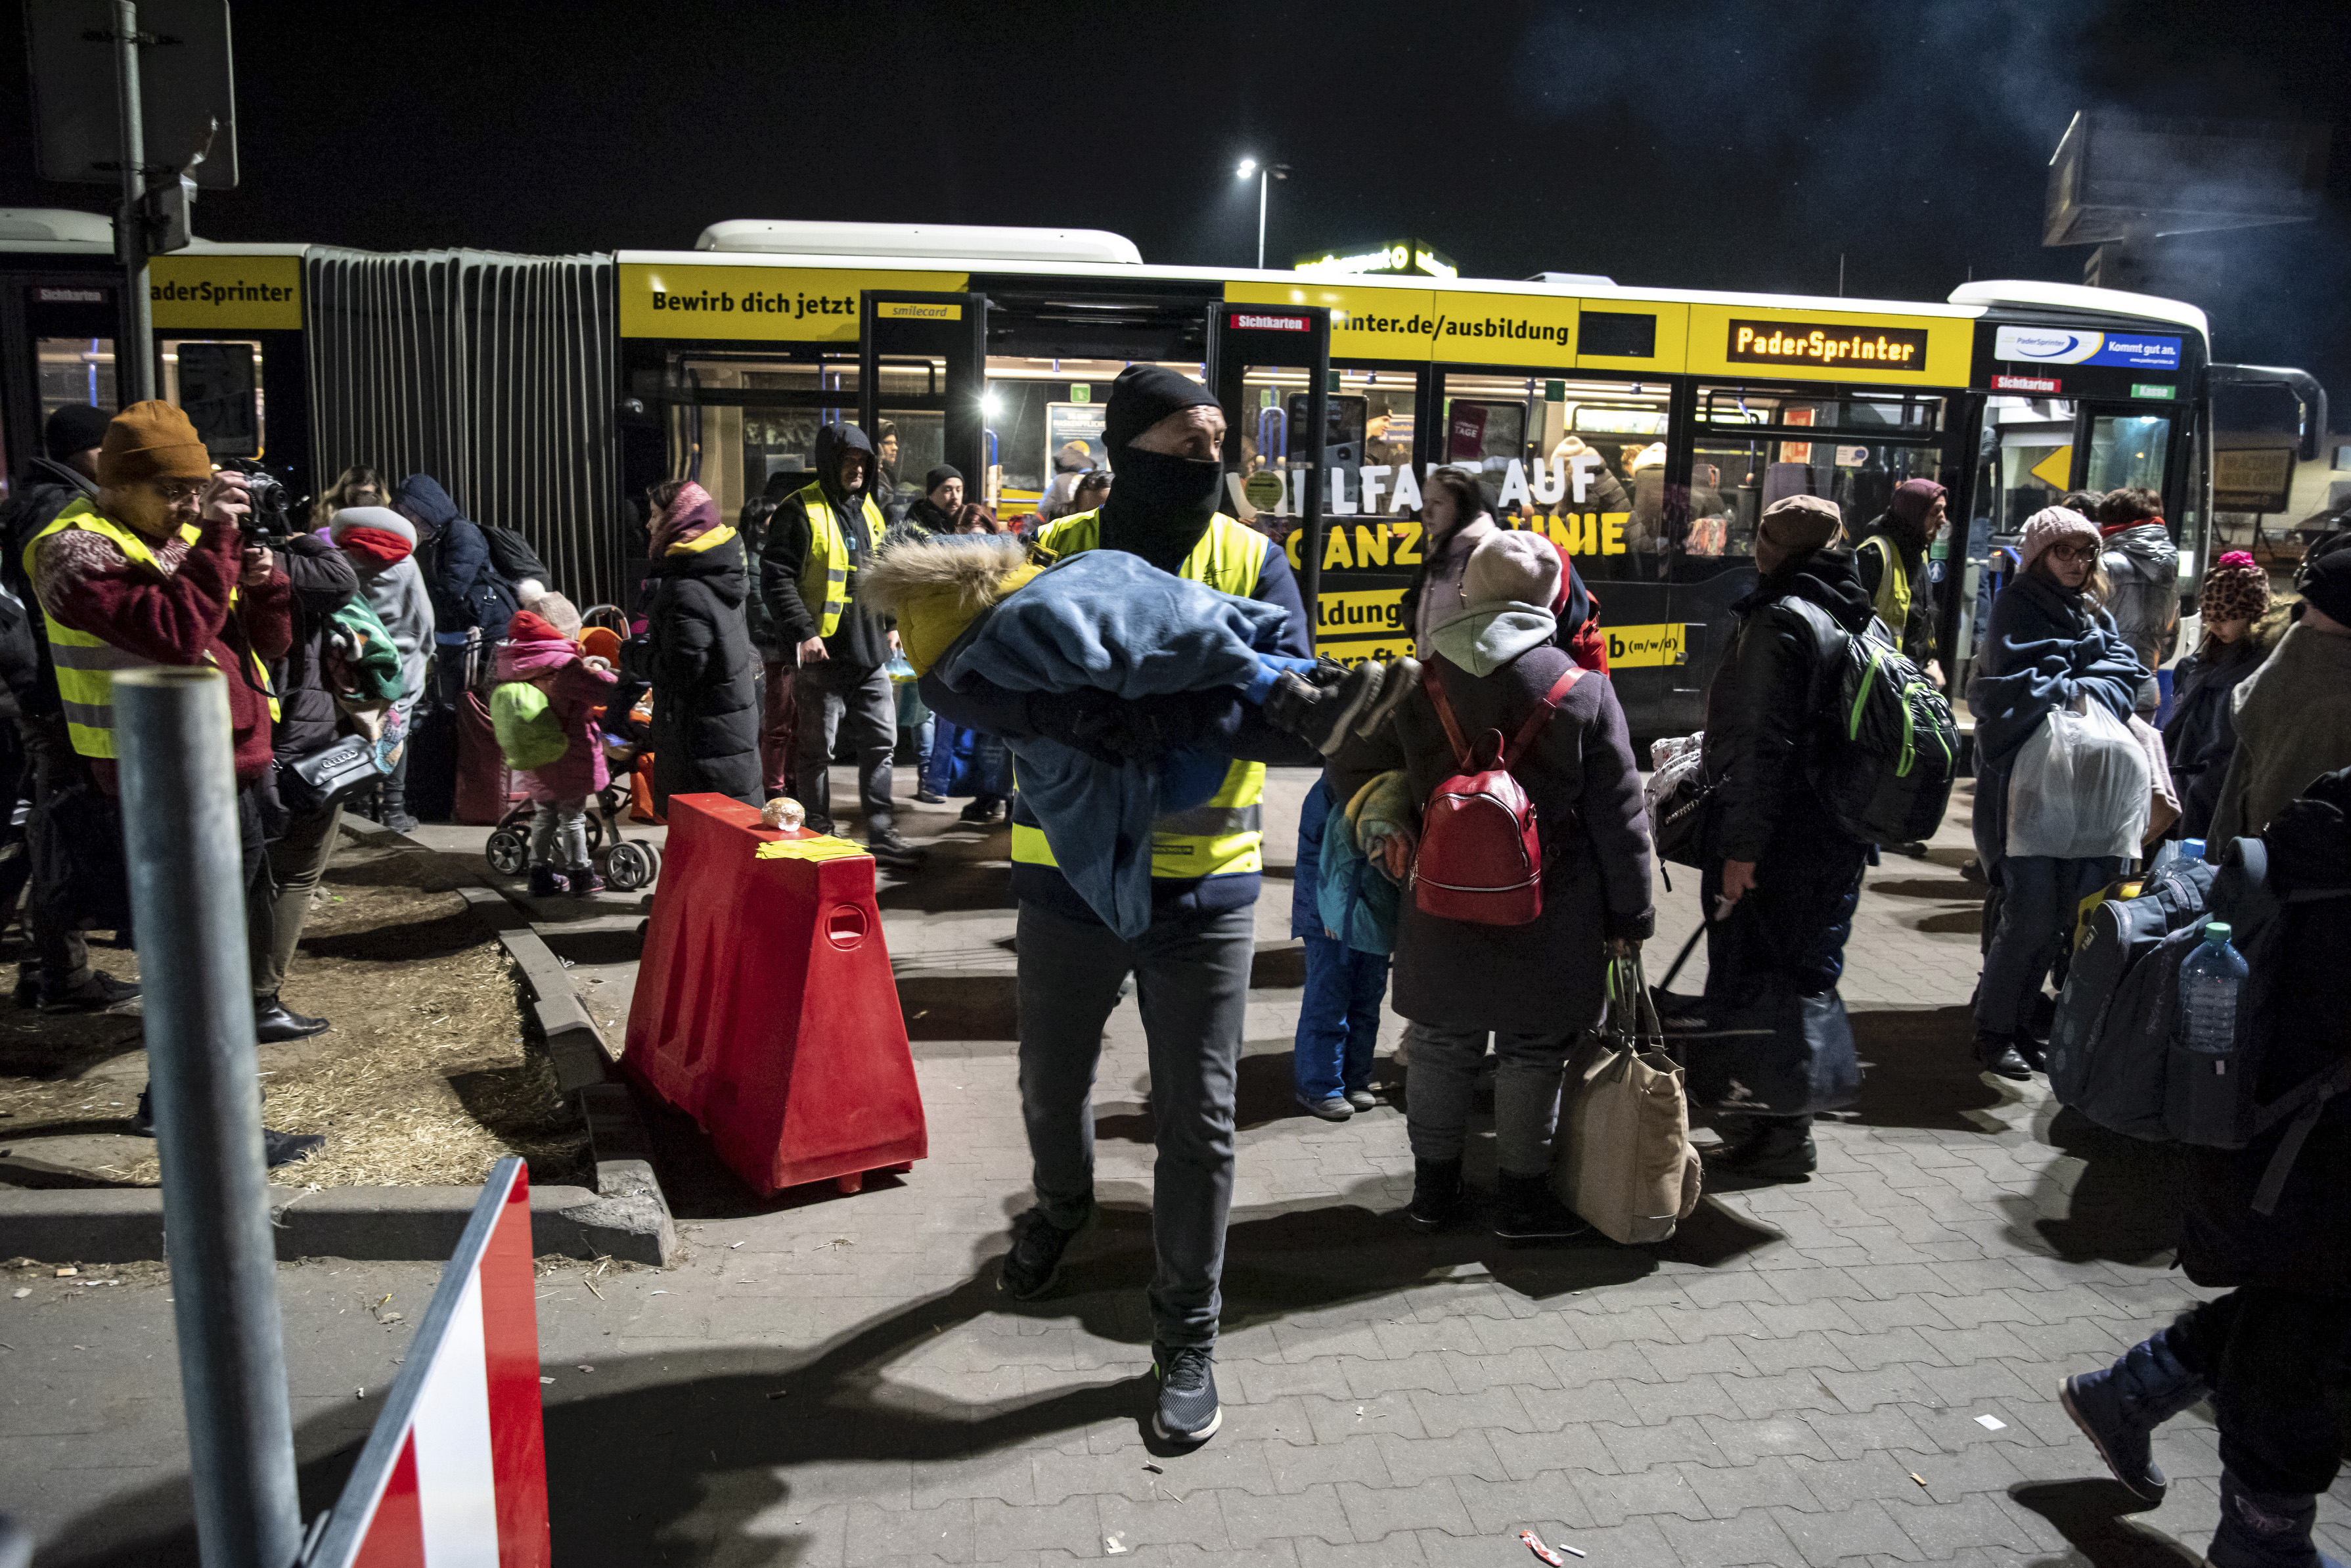 Bruselas lista para extender la protección temporal a refugiados de Ucrania